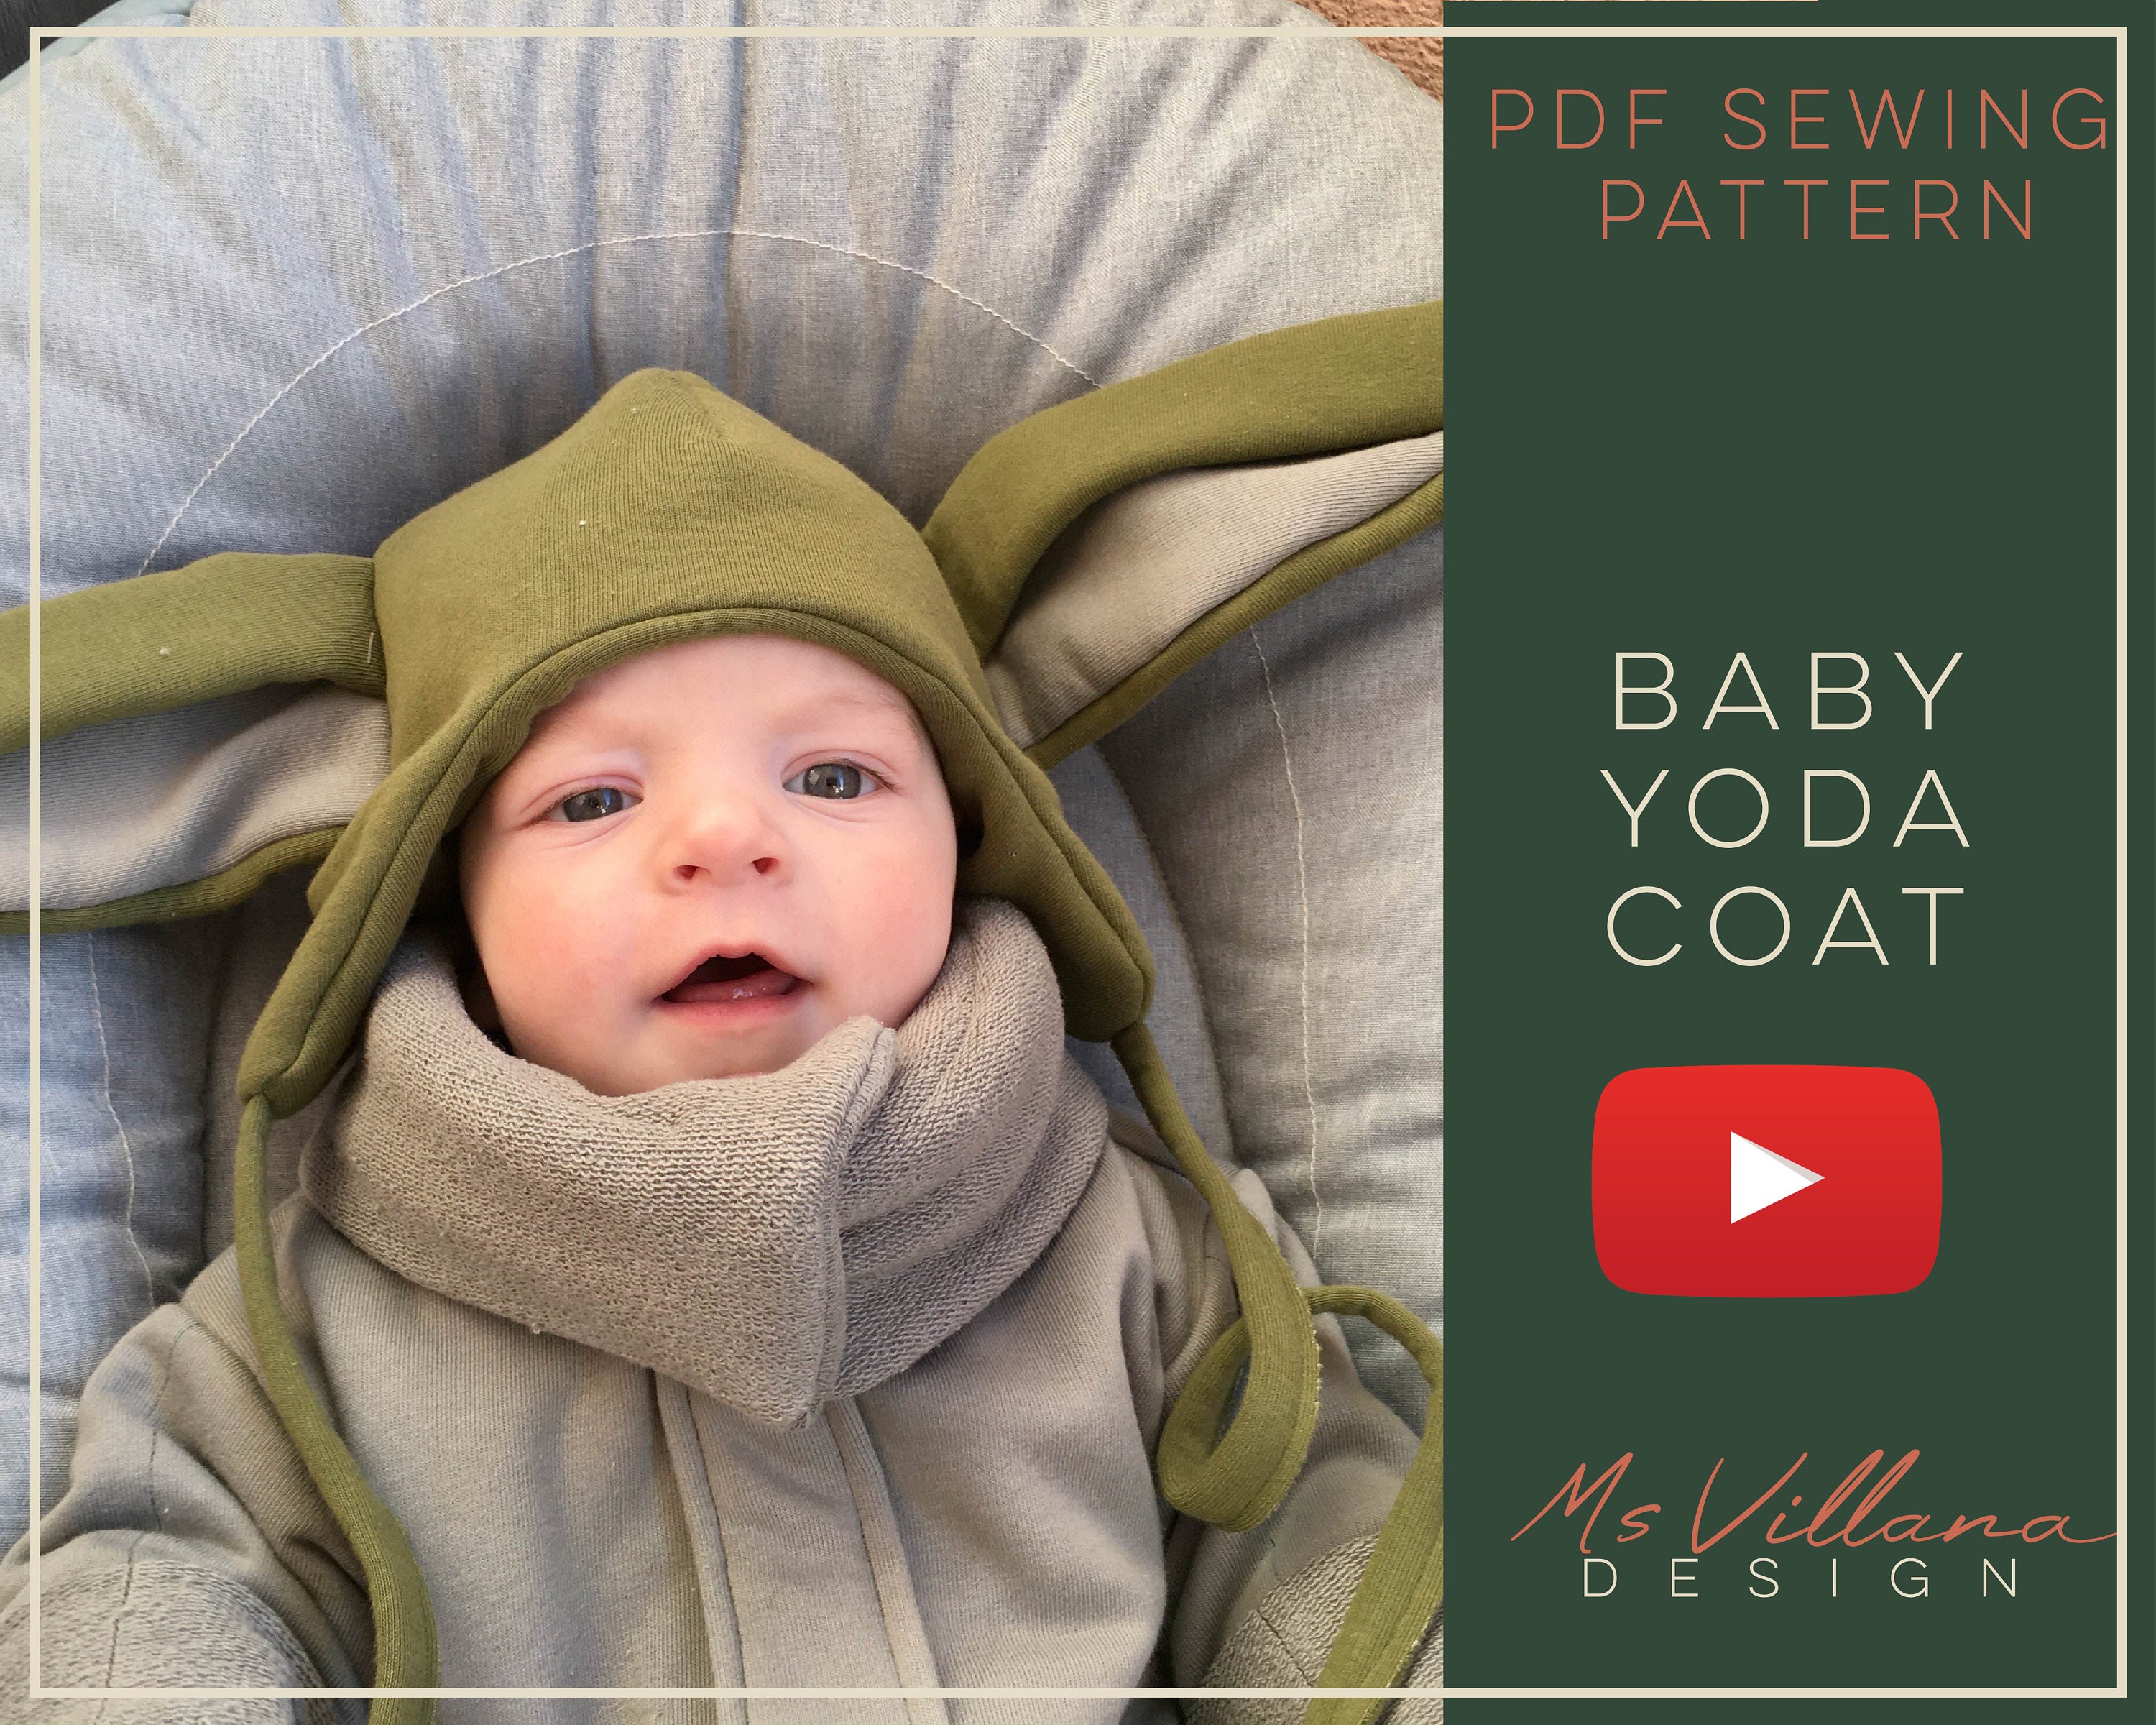 Comment dessiner BÉBÉ YODA (Baby Yoda - Star wars) étape par étape et  facilement 